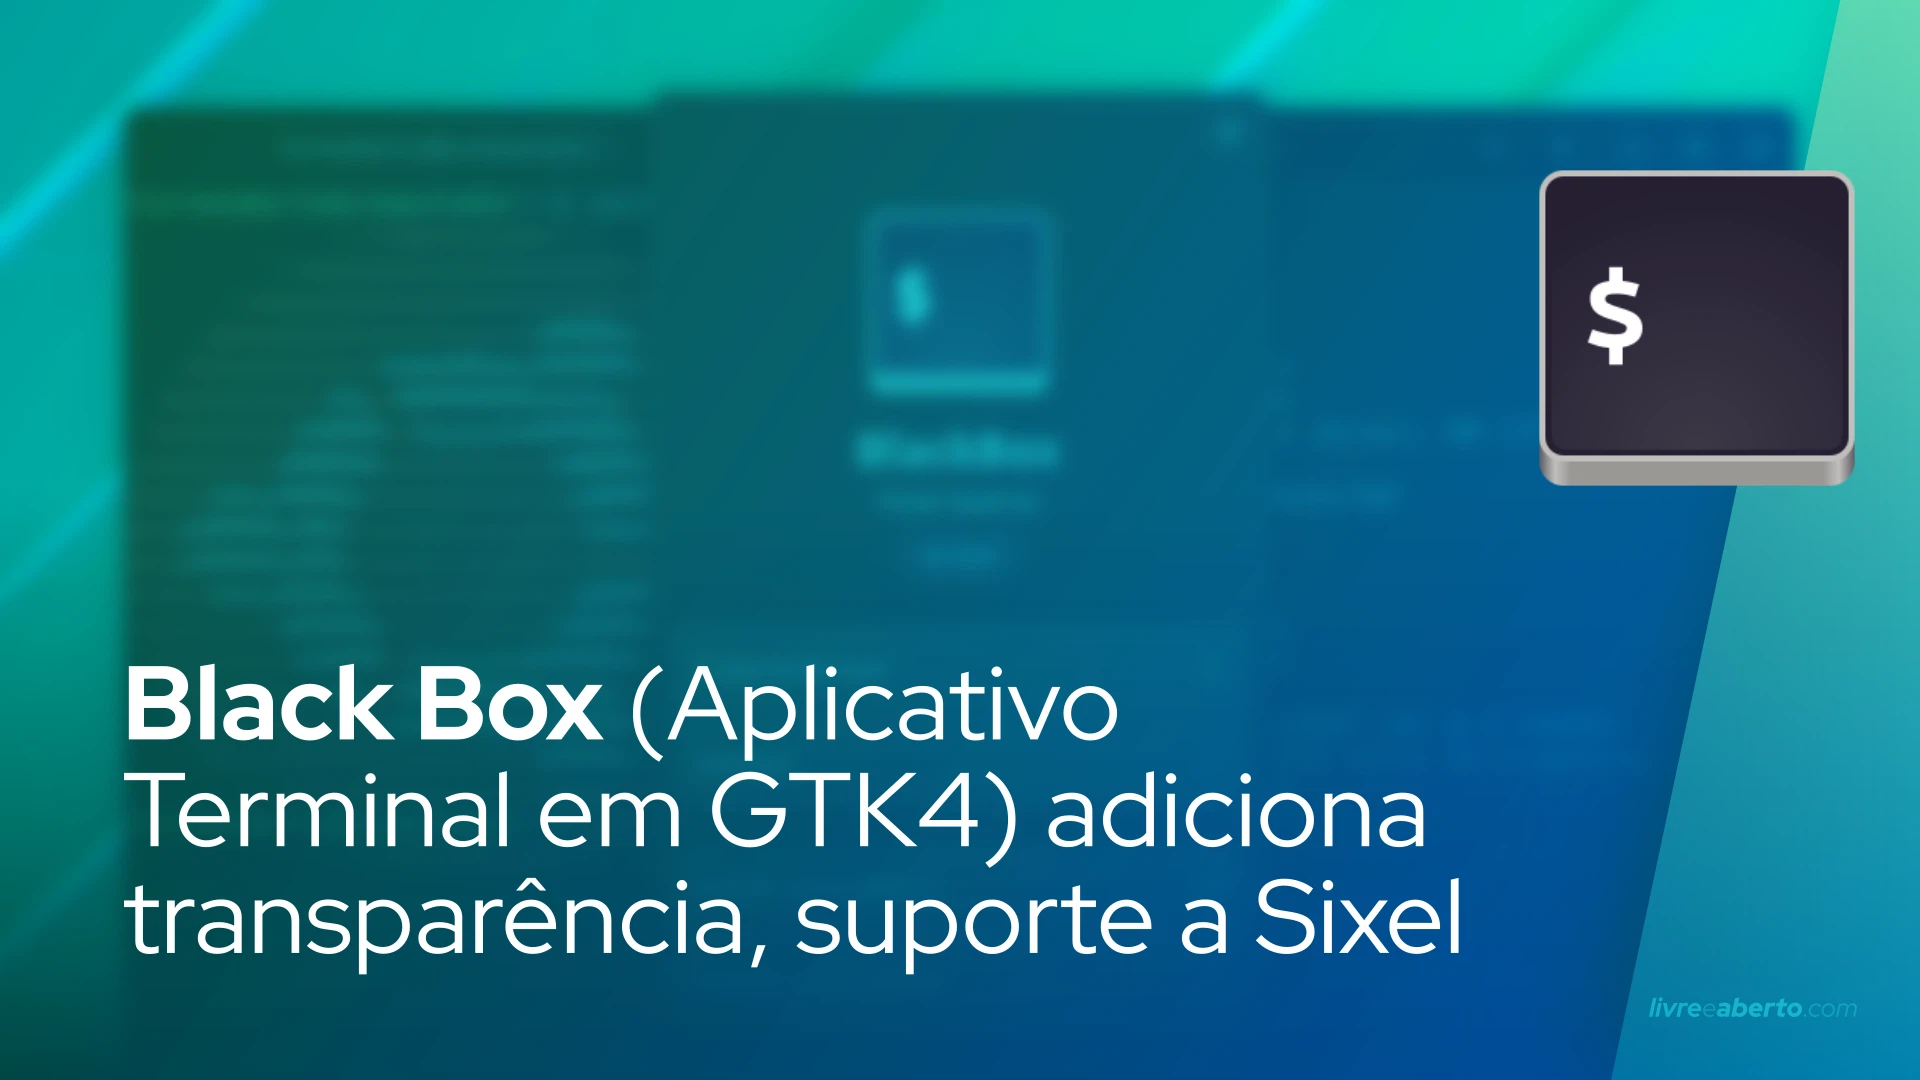 Black Box (Aplicativo Terminal em GTK4) adiciona transparência, suporte a Sixel